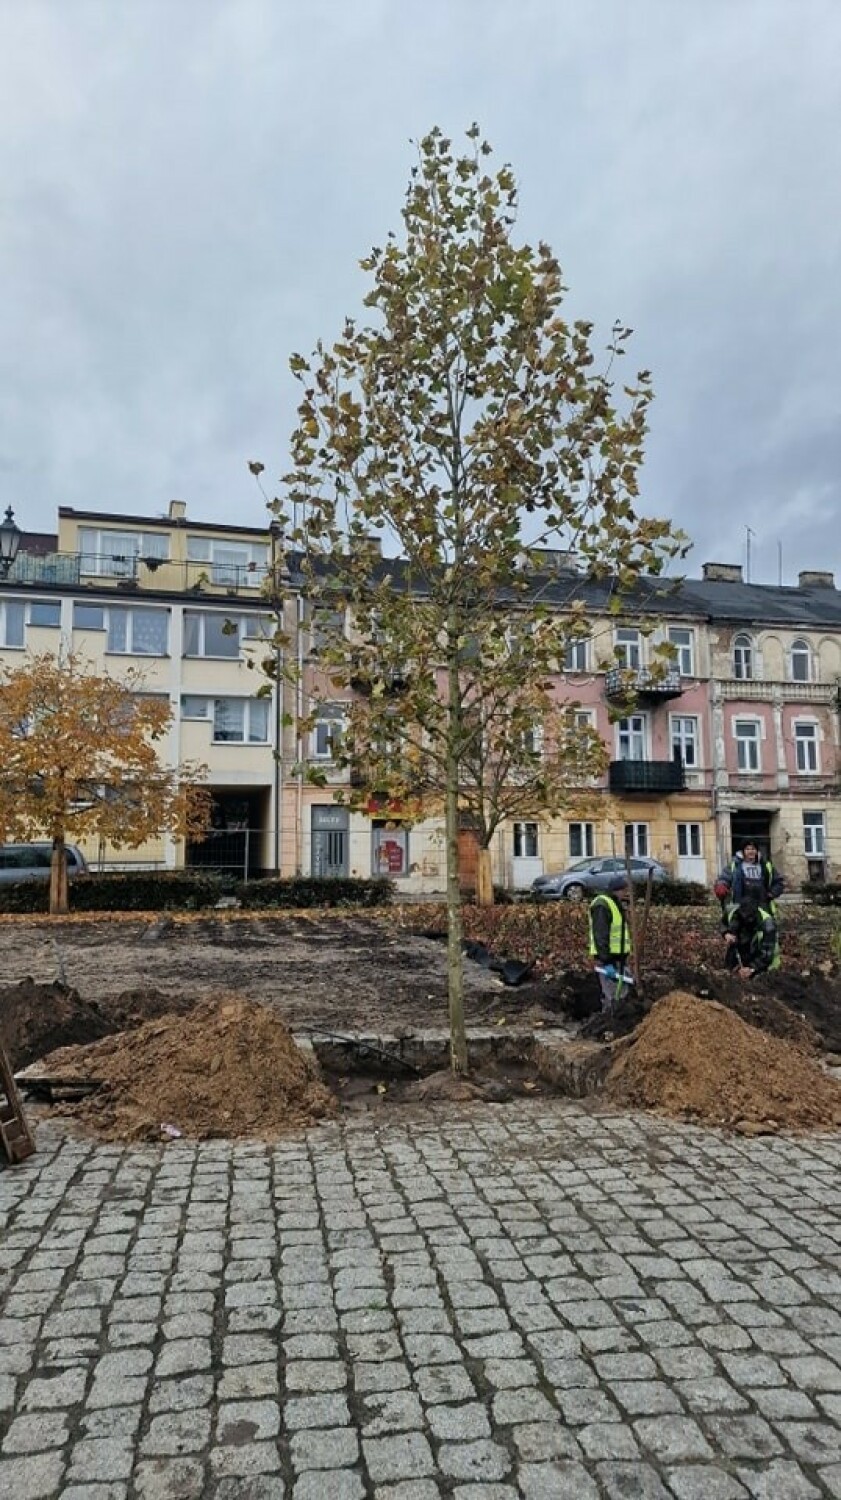 Zasadzono także kilkadziesiąt dużych drzew.